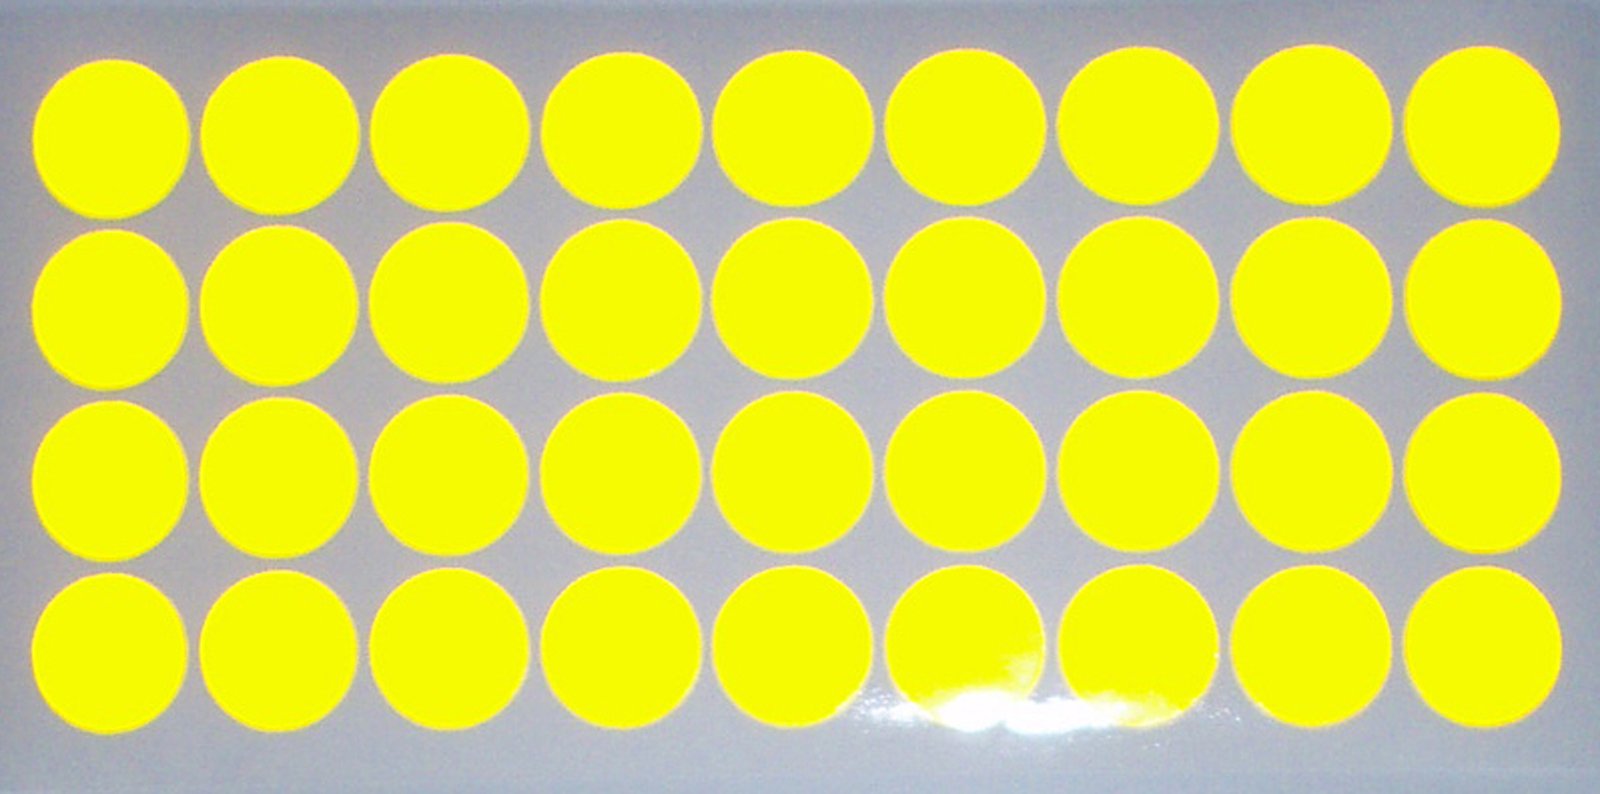 easydruck24de Reflektierendes Aufkleber Set - Kreise - 36 Stück gelb Ø 2 cm pro Aufkleber - Reflexion Leucht-Sticker orange für Bike Fahrrad Helm Auto Sicherheit im Dunkeln für Kinder - Reflex_023 von easydruck24de